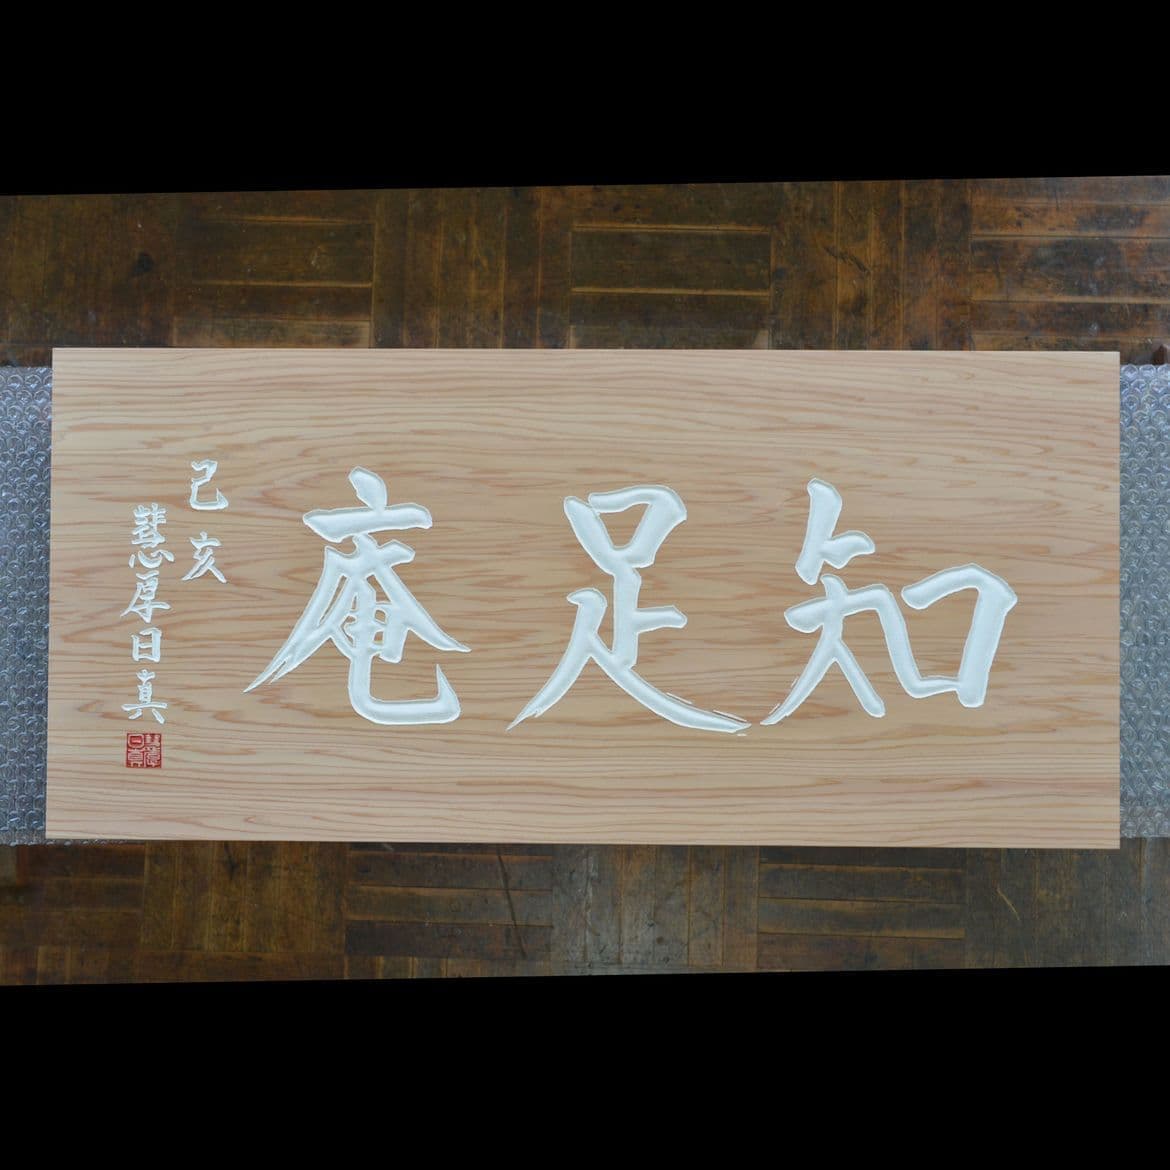 茶室名と落款が記された木製看板、扁額